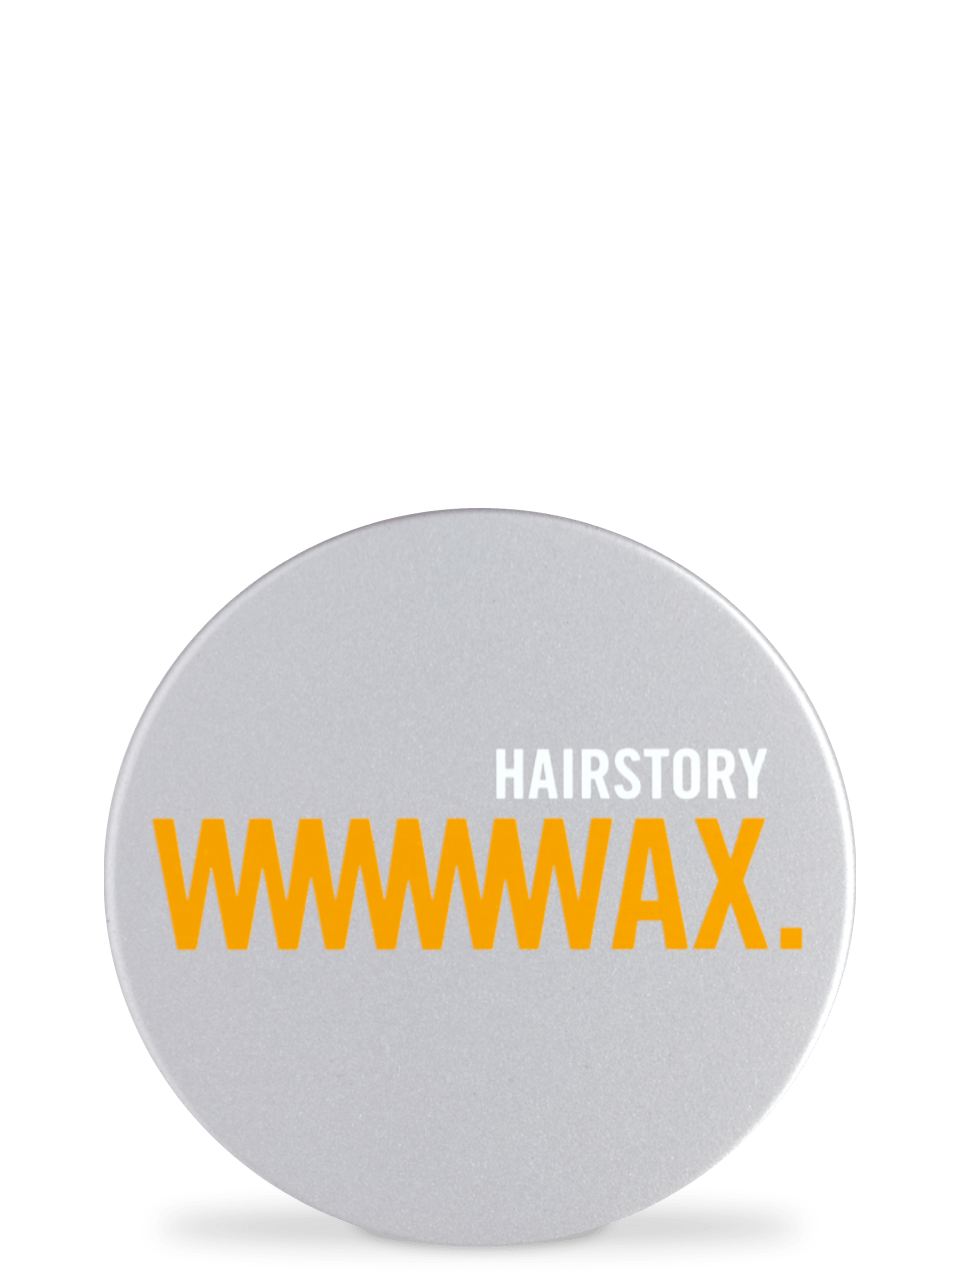 Wax- Hair Styling Wax